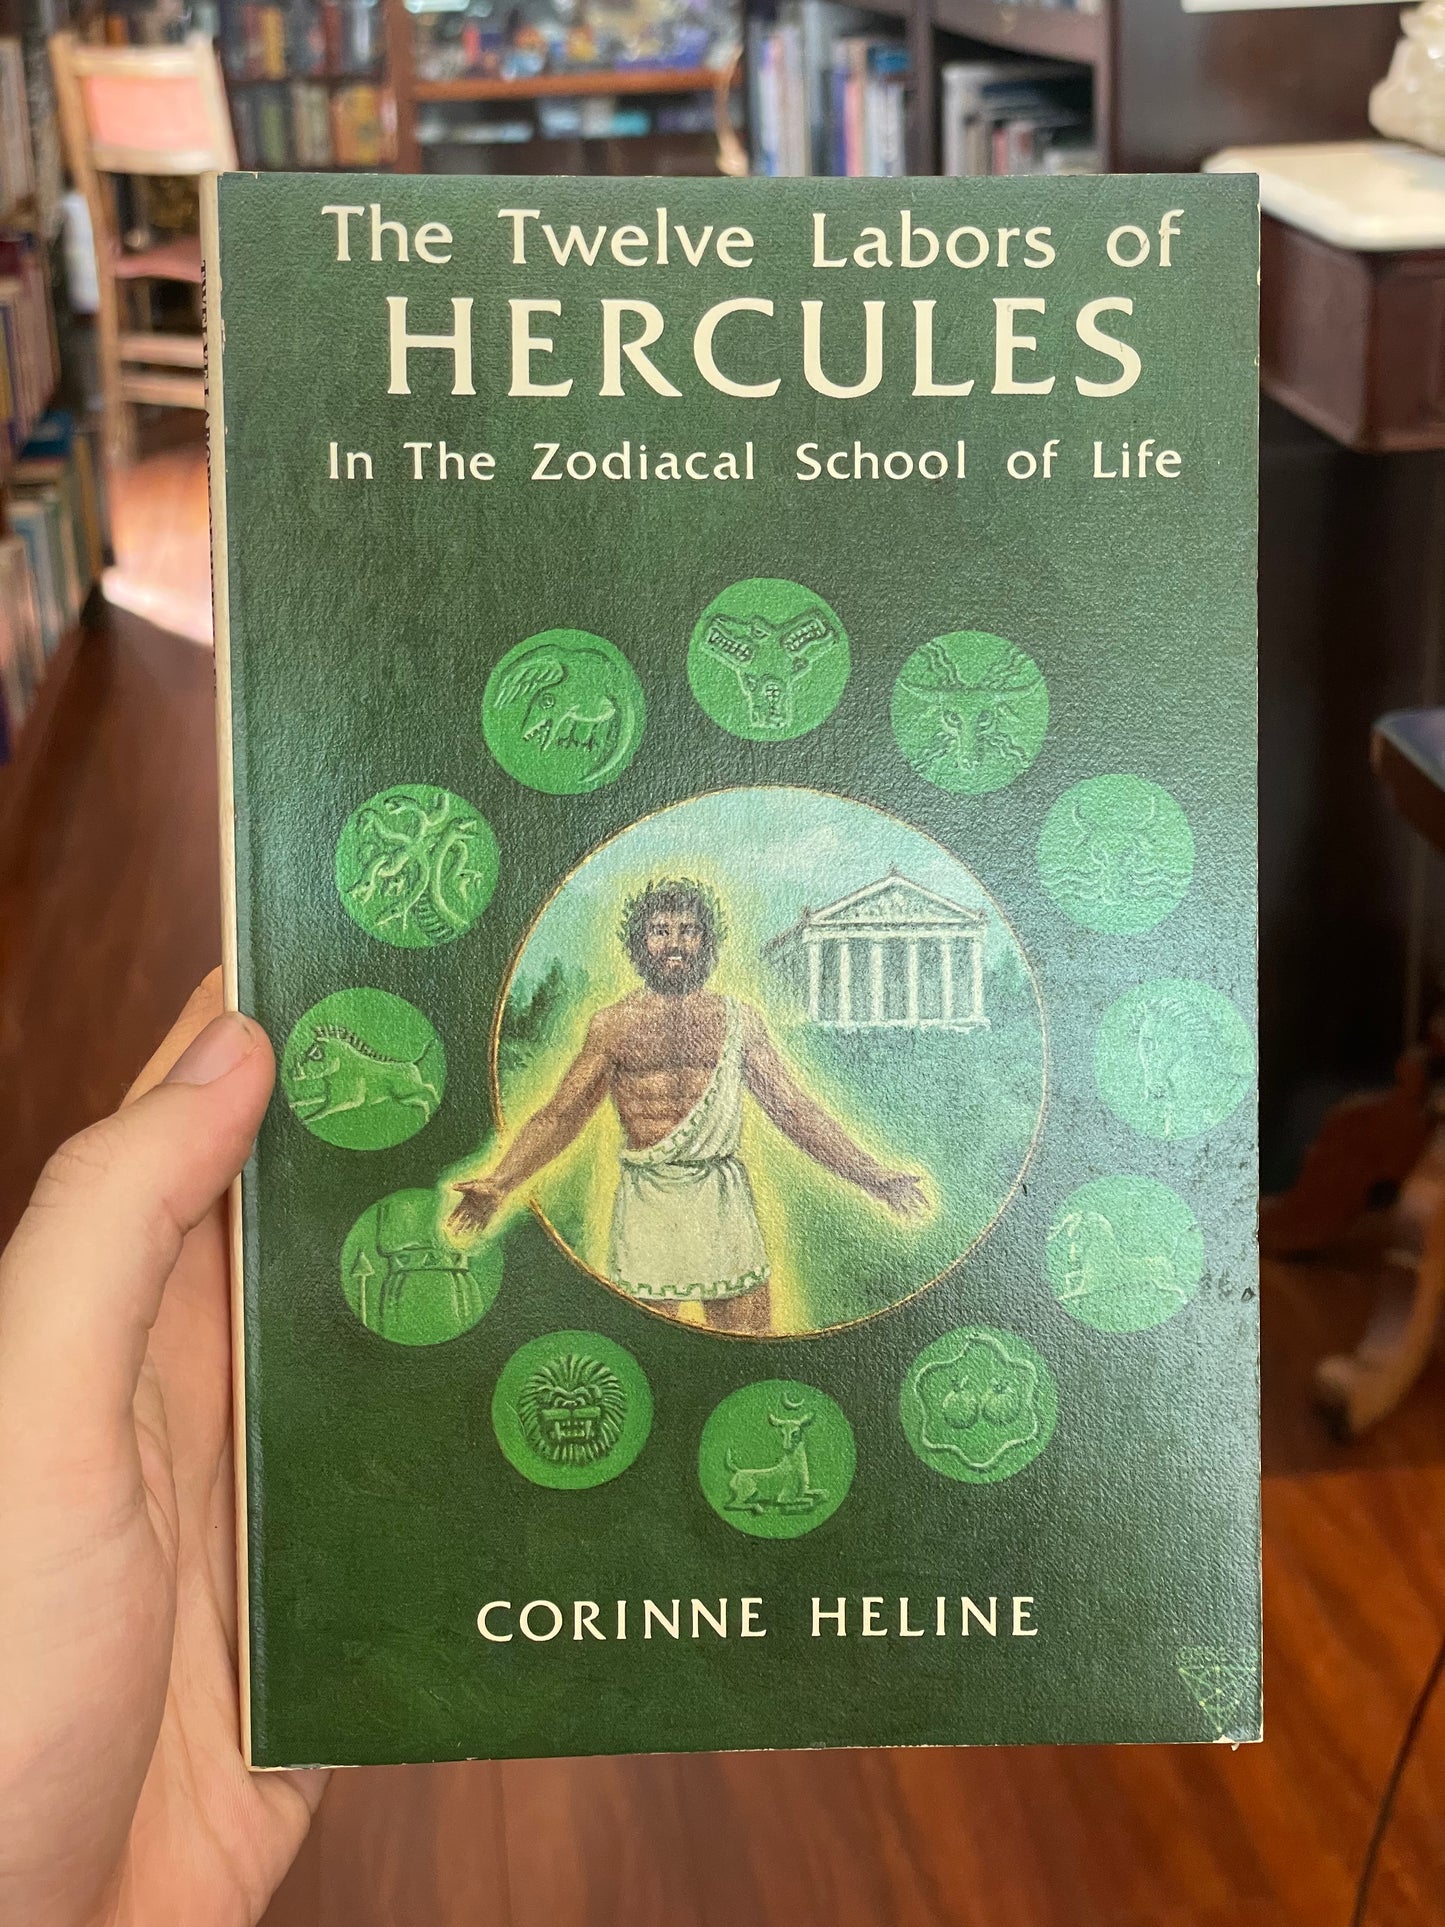 The Twelve Labors of Hercules by Corinne Heline